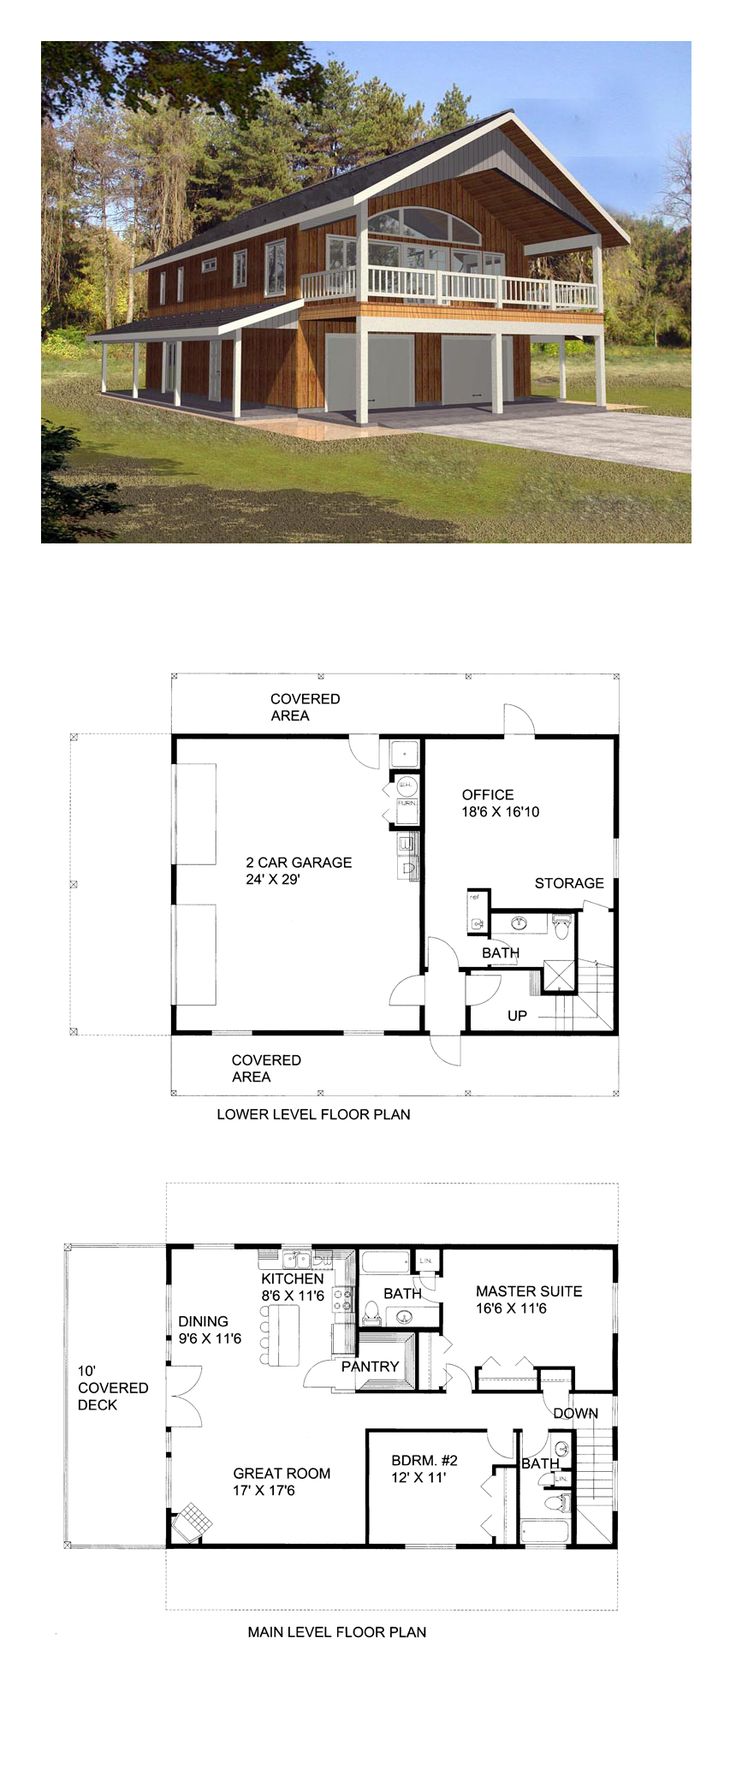 basement apartment plans ideas photo - 4